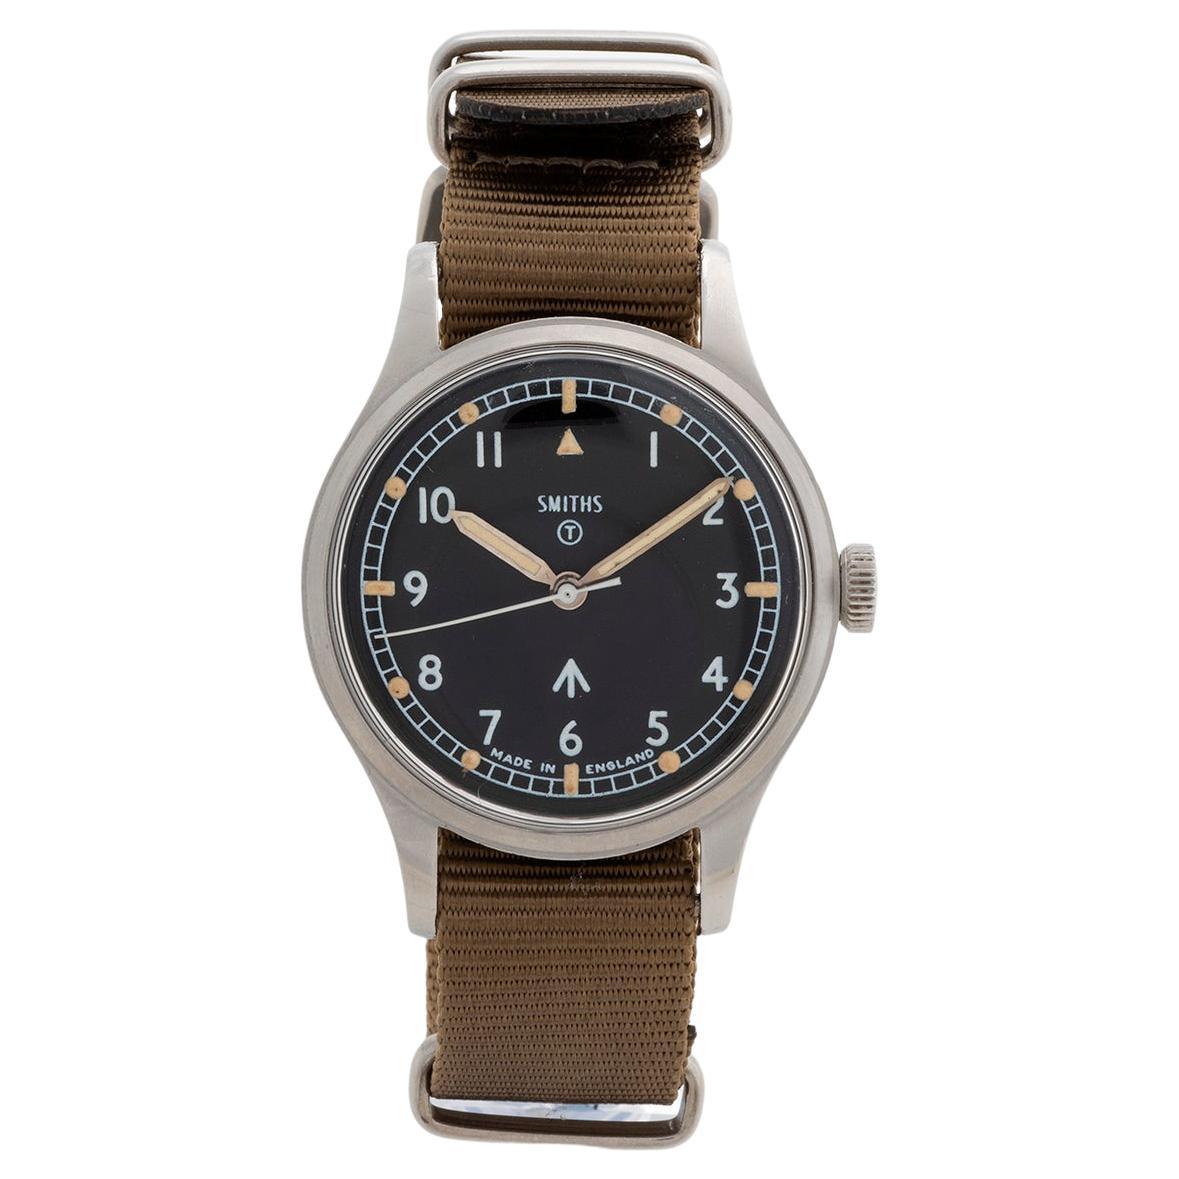 Smiths 6B/ 9614045 Made in England, RAF Issued Military Wristwatch, Yr, 1967